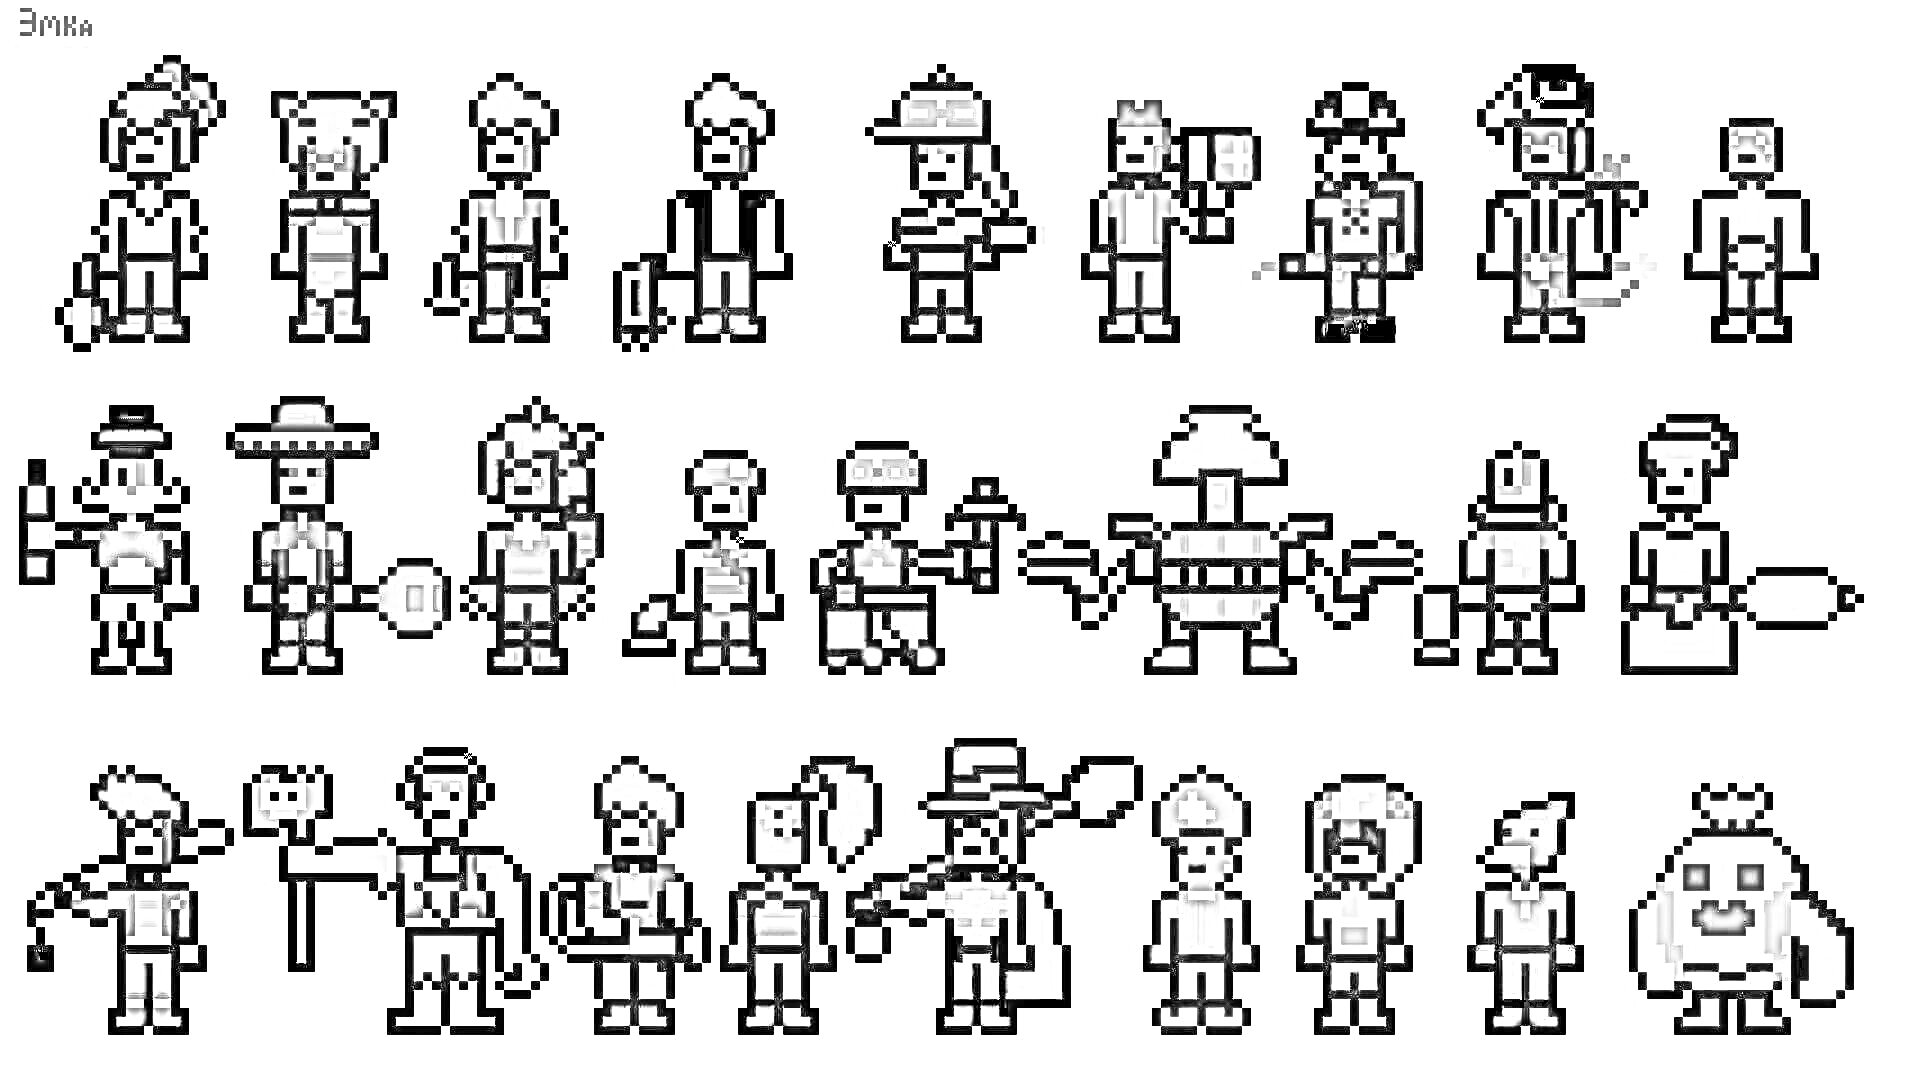 Раскраска Персонажи Браво Старс по клеточкам (пиксель-арт) - персонажи в различных позах и с различным оружием и аксессуарами.